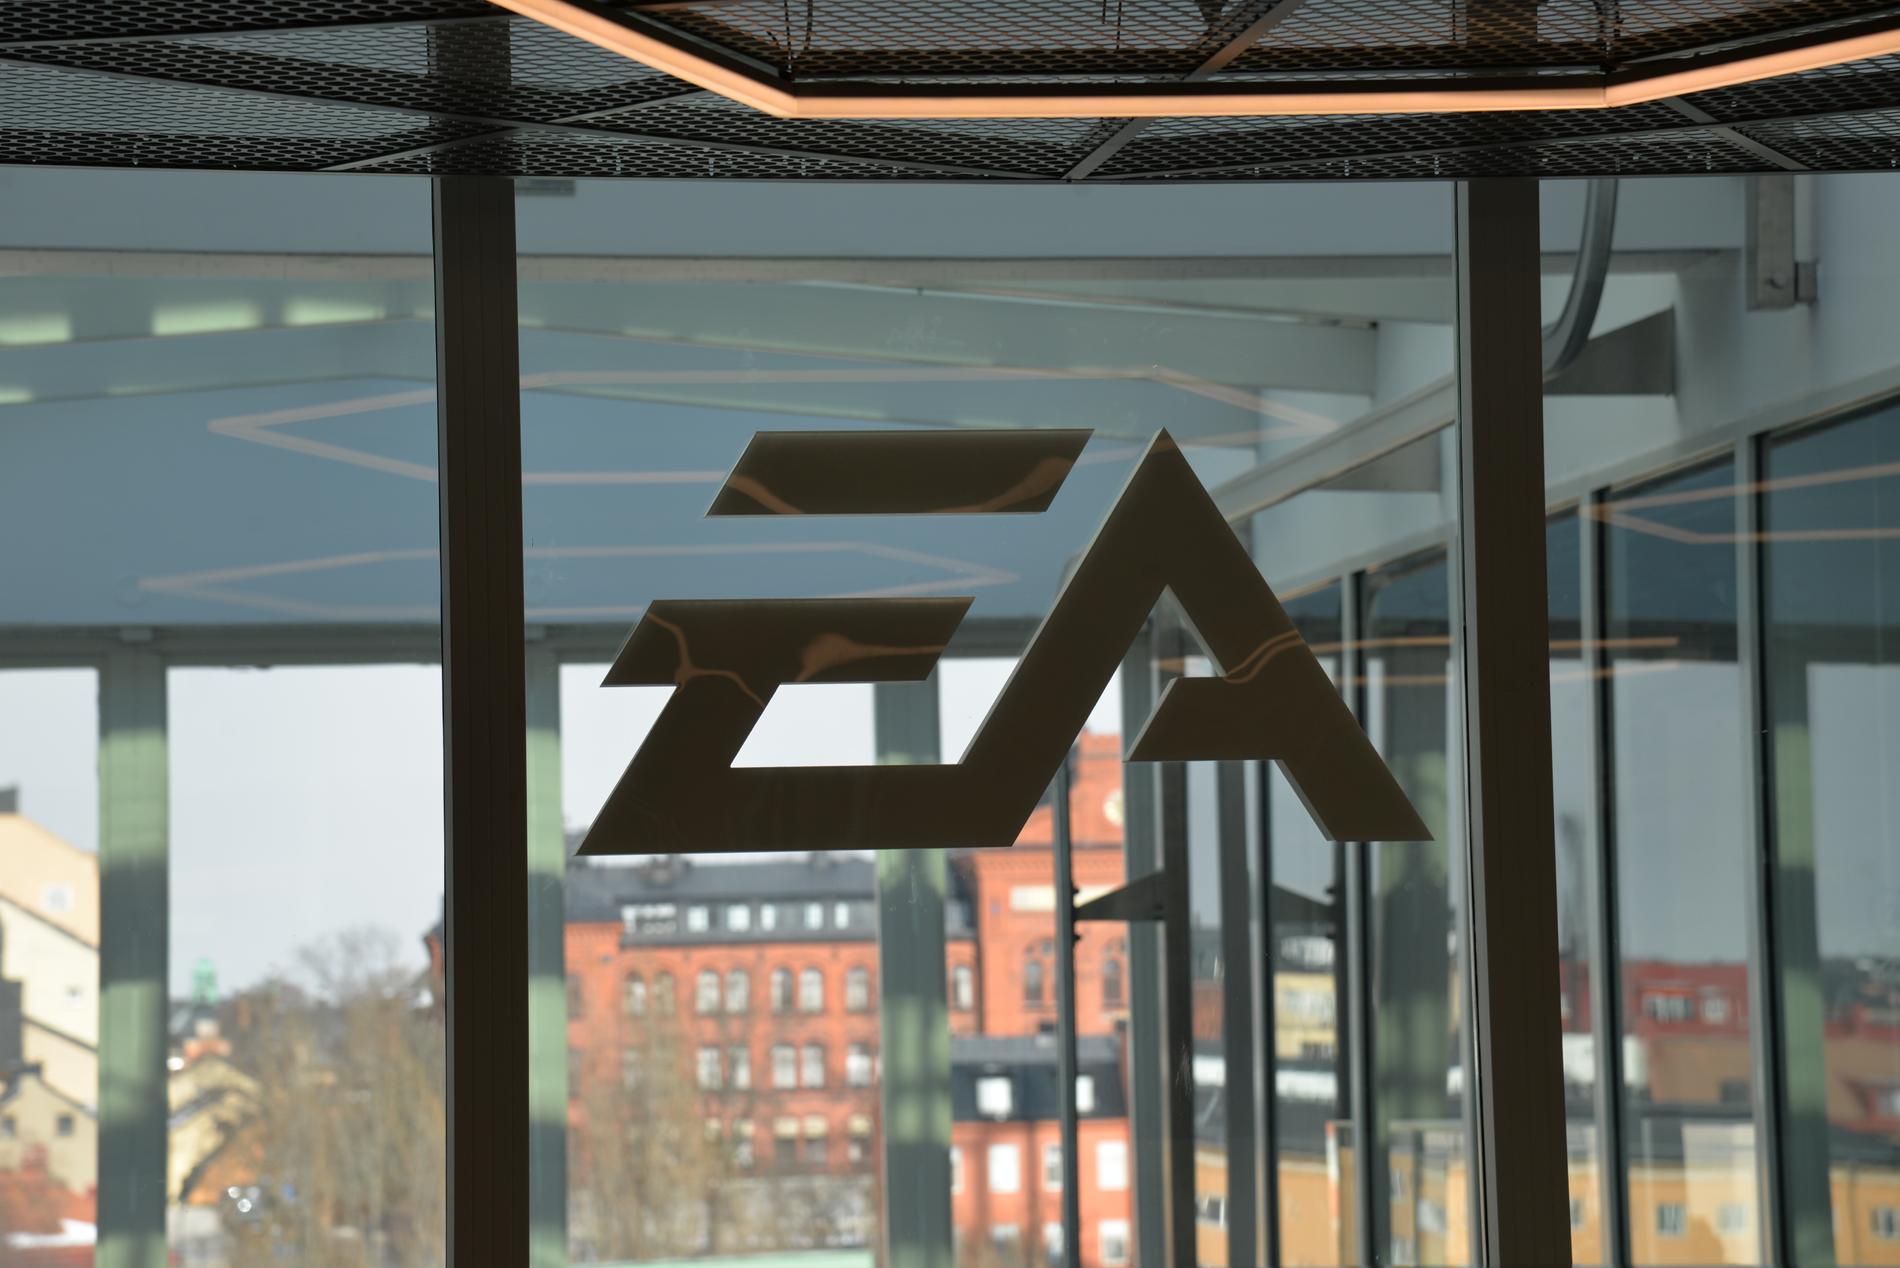 Speljätten EA utreder om någon anställd på företaget kan ha sålt unika spelarkort i "Fifa ultimate team" på svarta marknaden. Incidenten har fått smeknamnet #EAGate. Arkivbild.